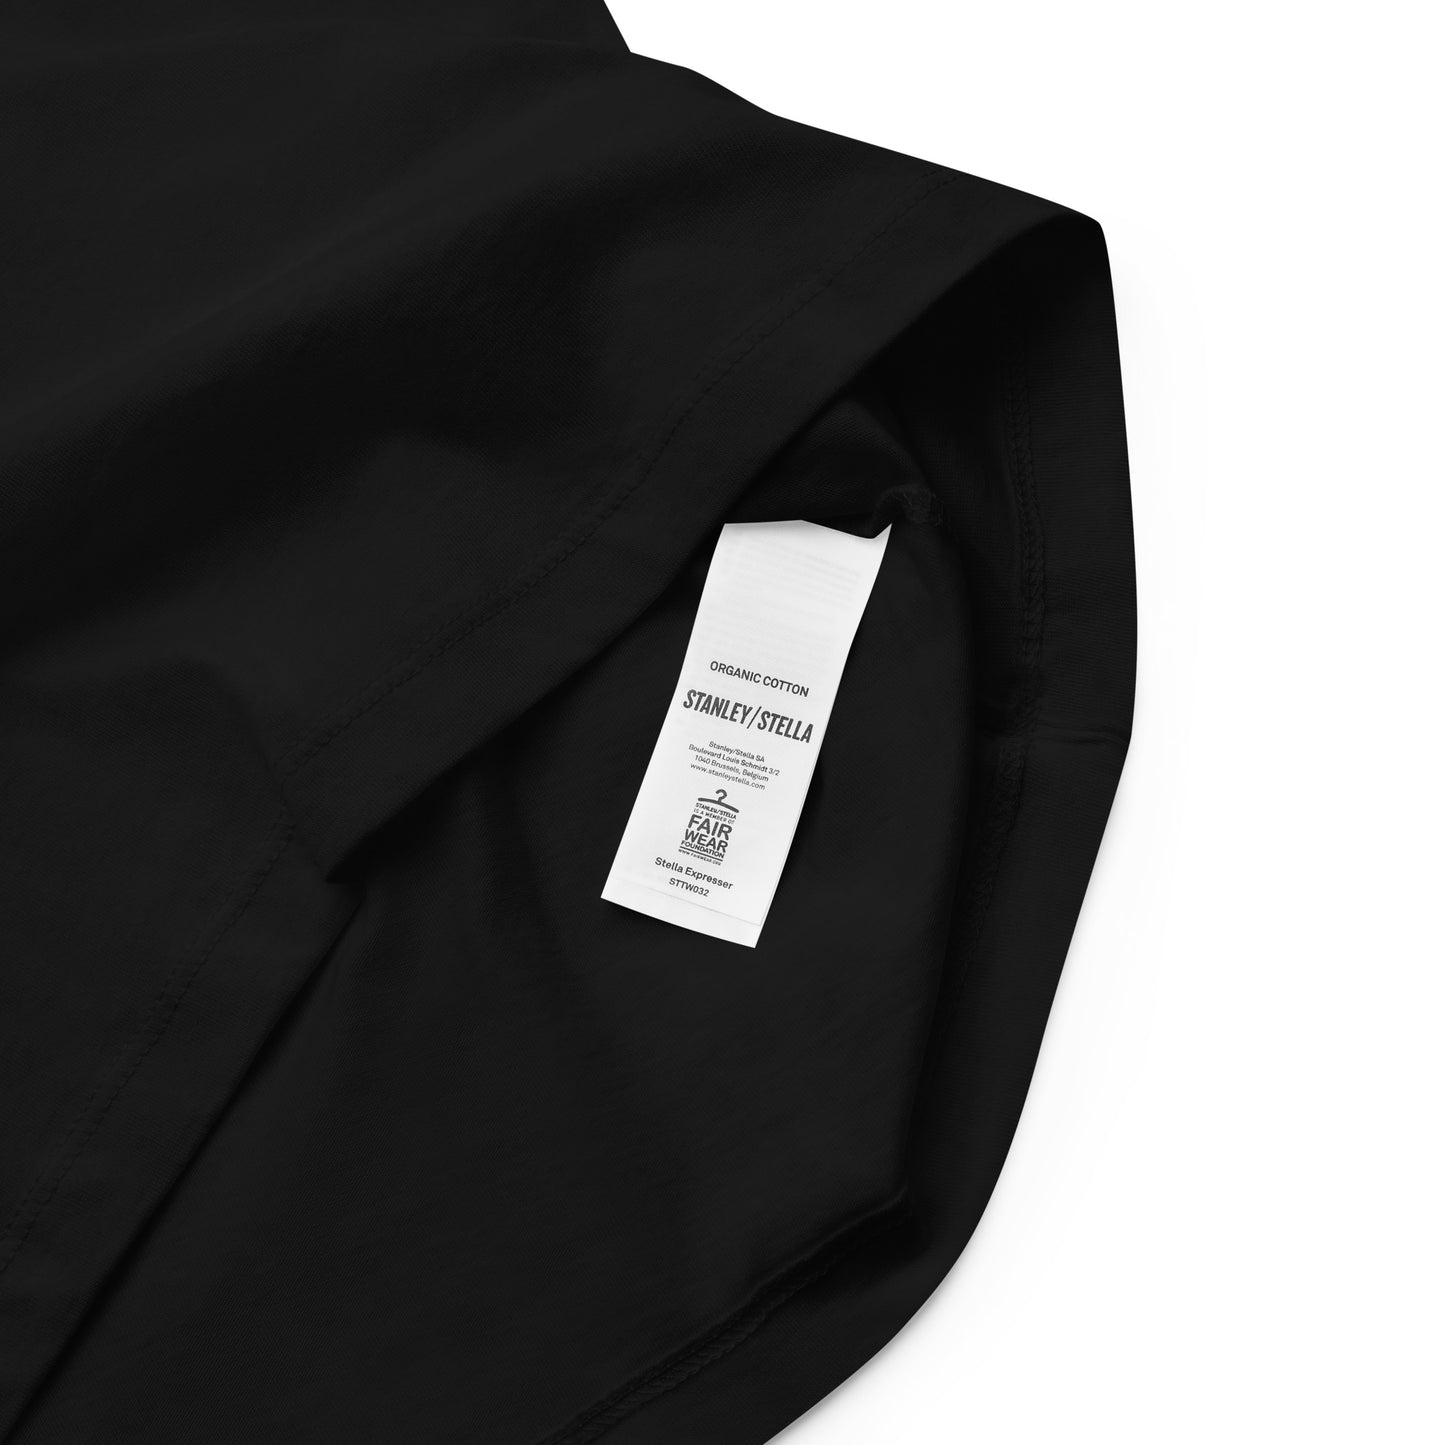 T-shirt noir oiseaux printaniers brodés style Bauhaus coton bio - Femme